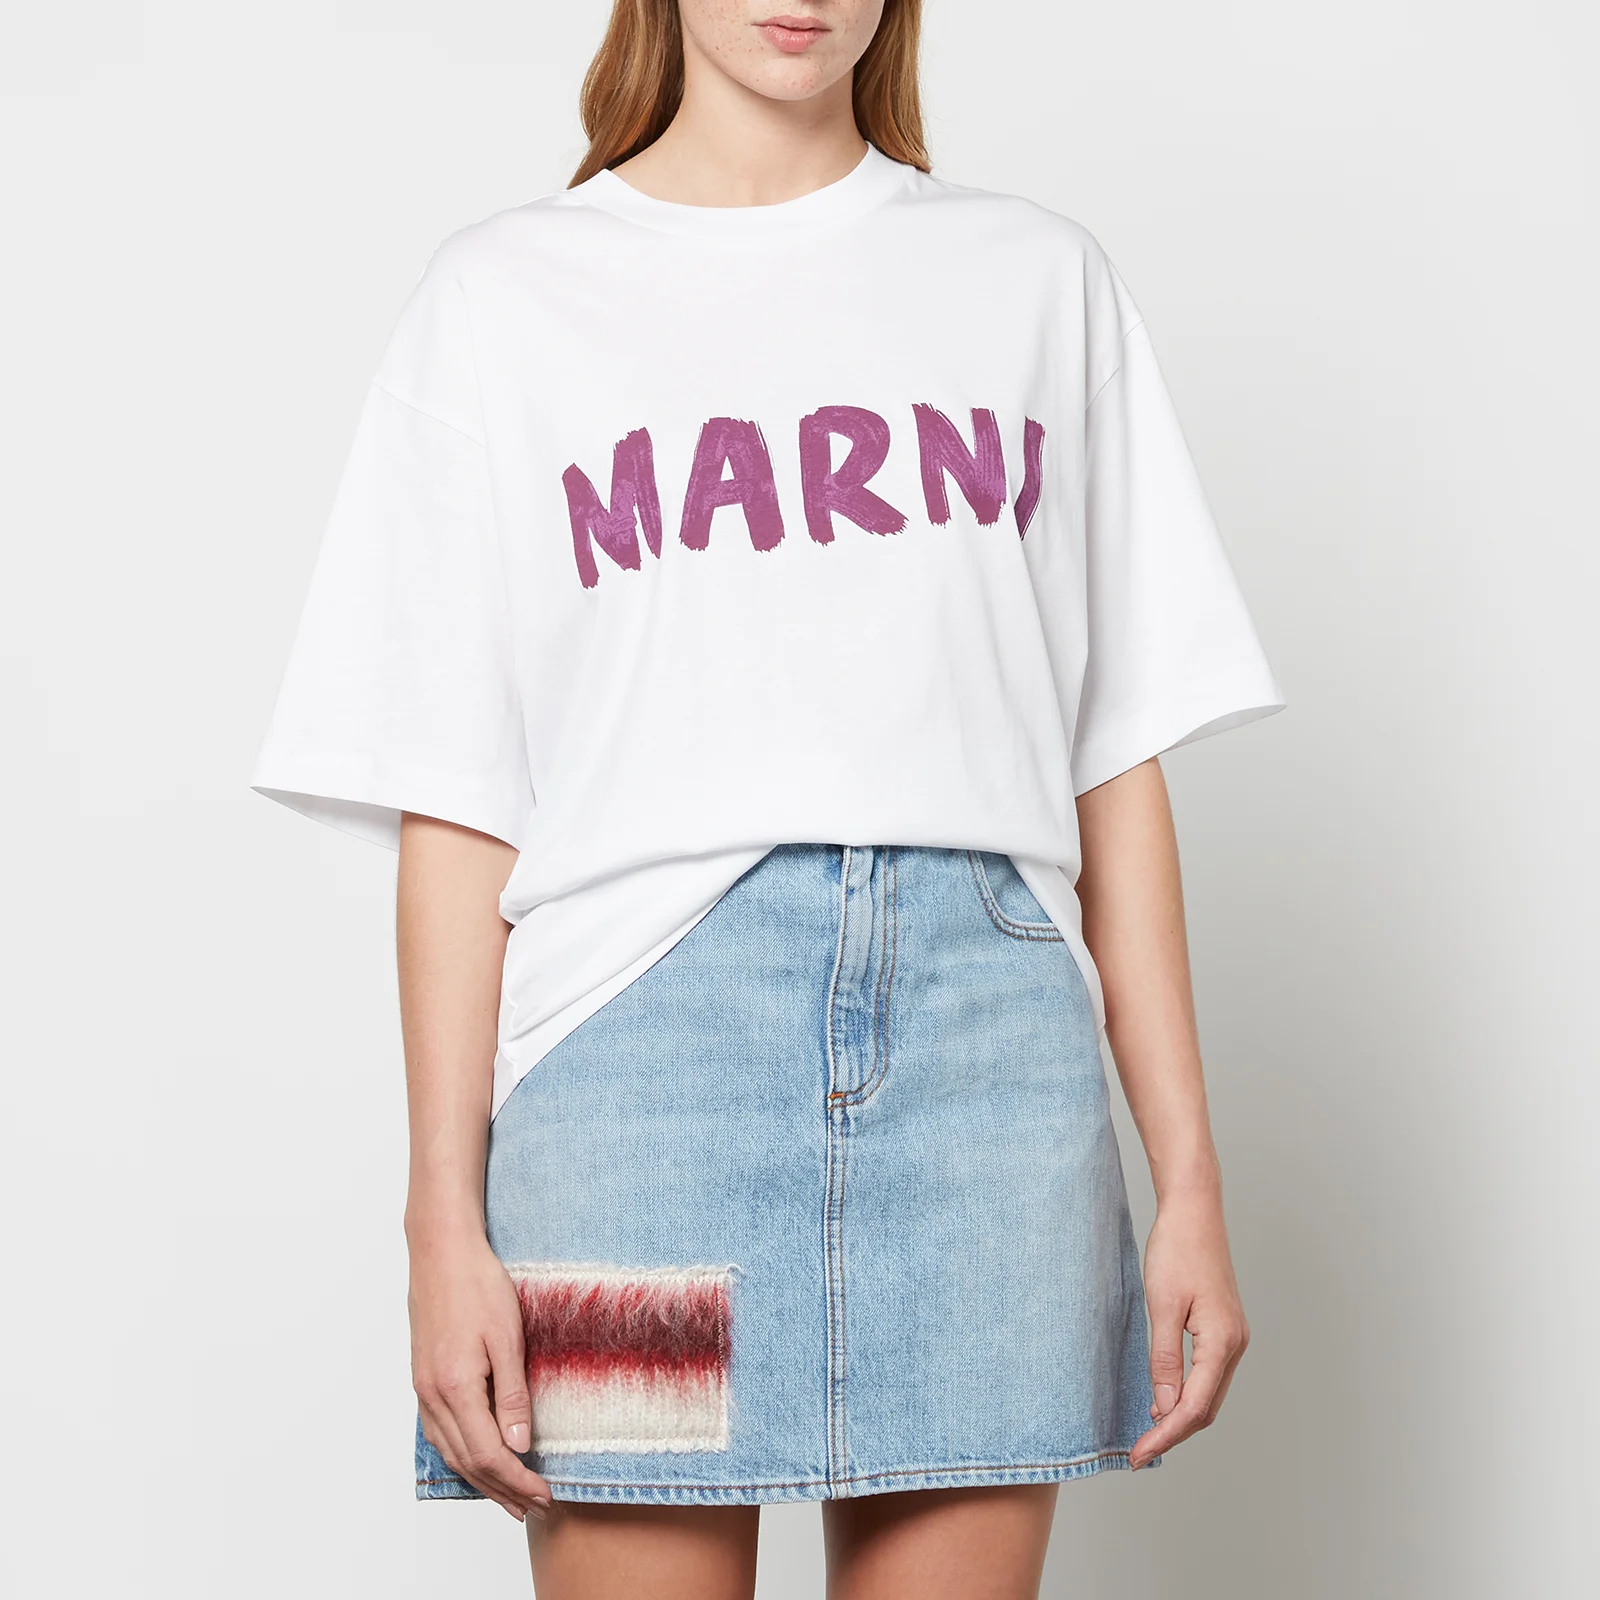 Marni Women's T-Shirt - Lily White Image 1